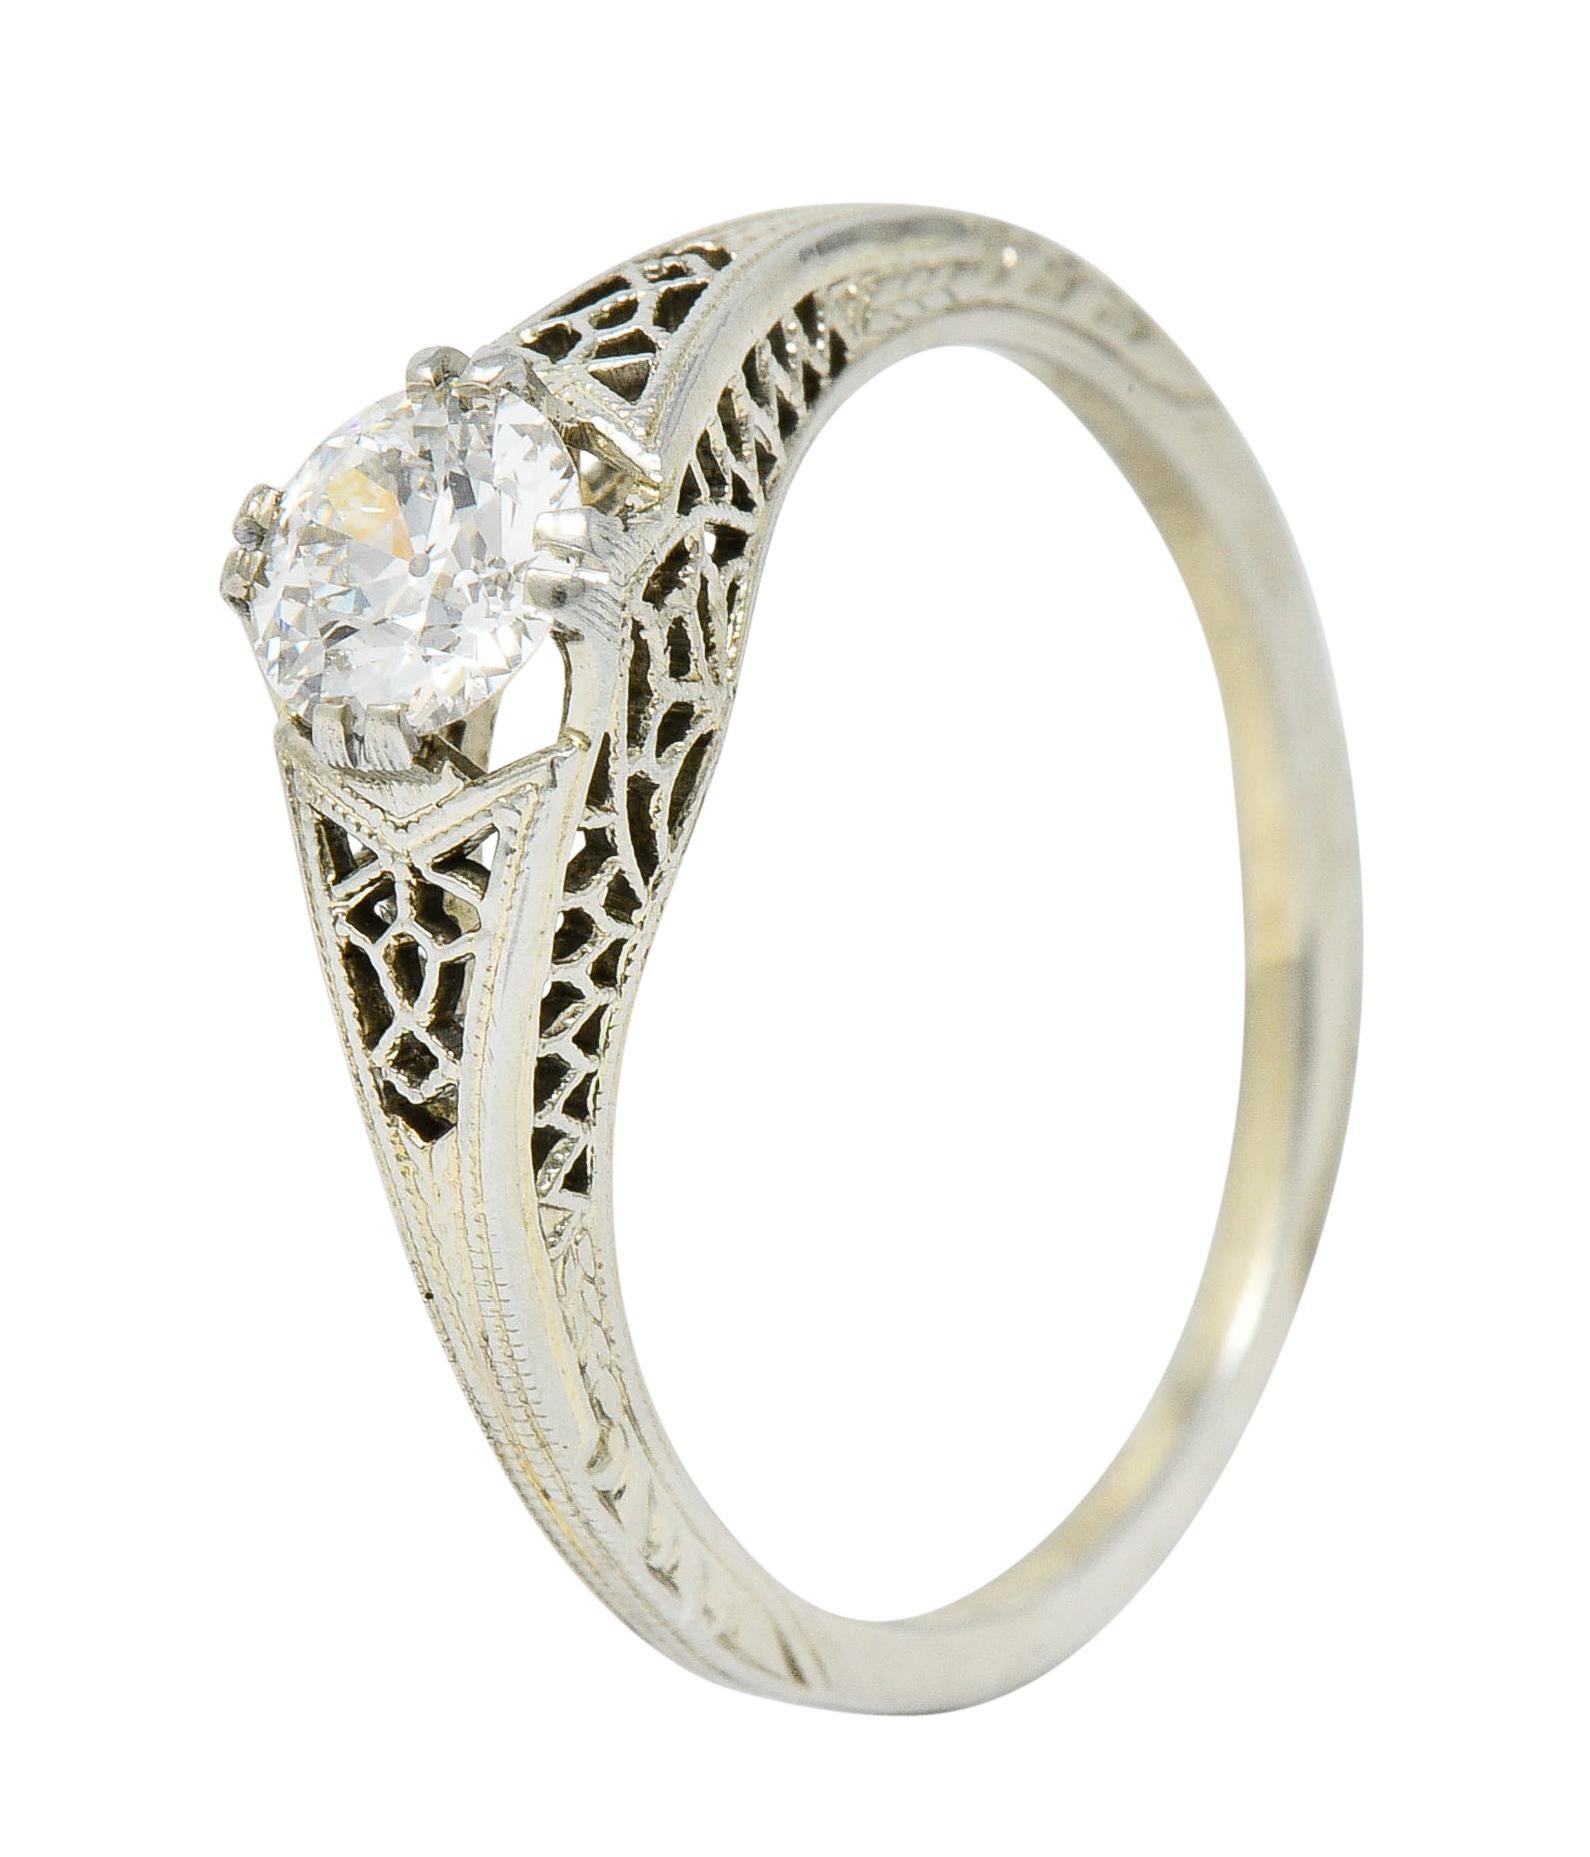 Jones & Woodland Co. 0.44 Carat Diamond 18 Karat White Gold Engagement Ring 1